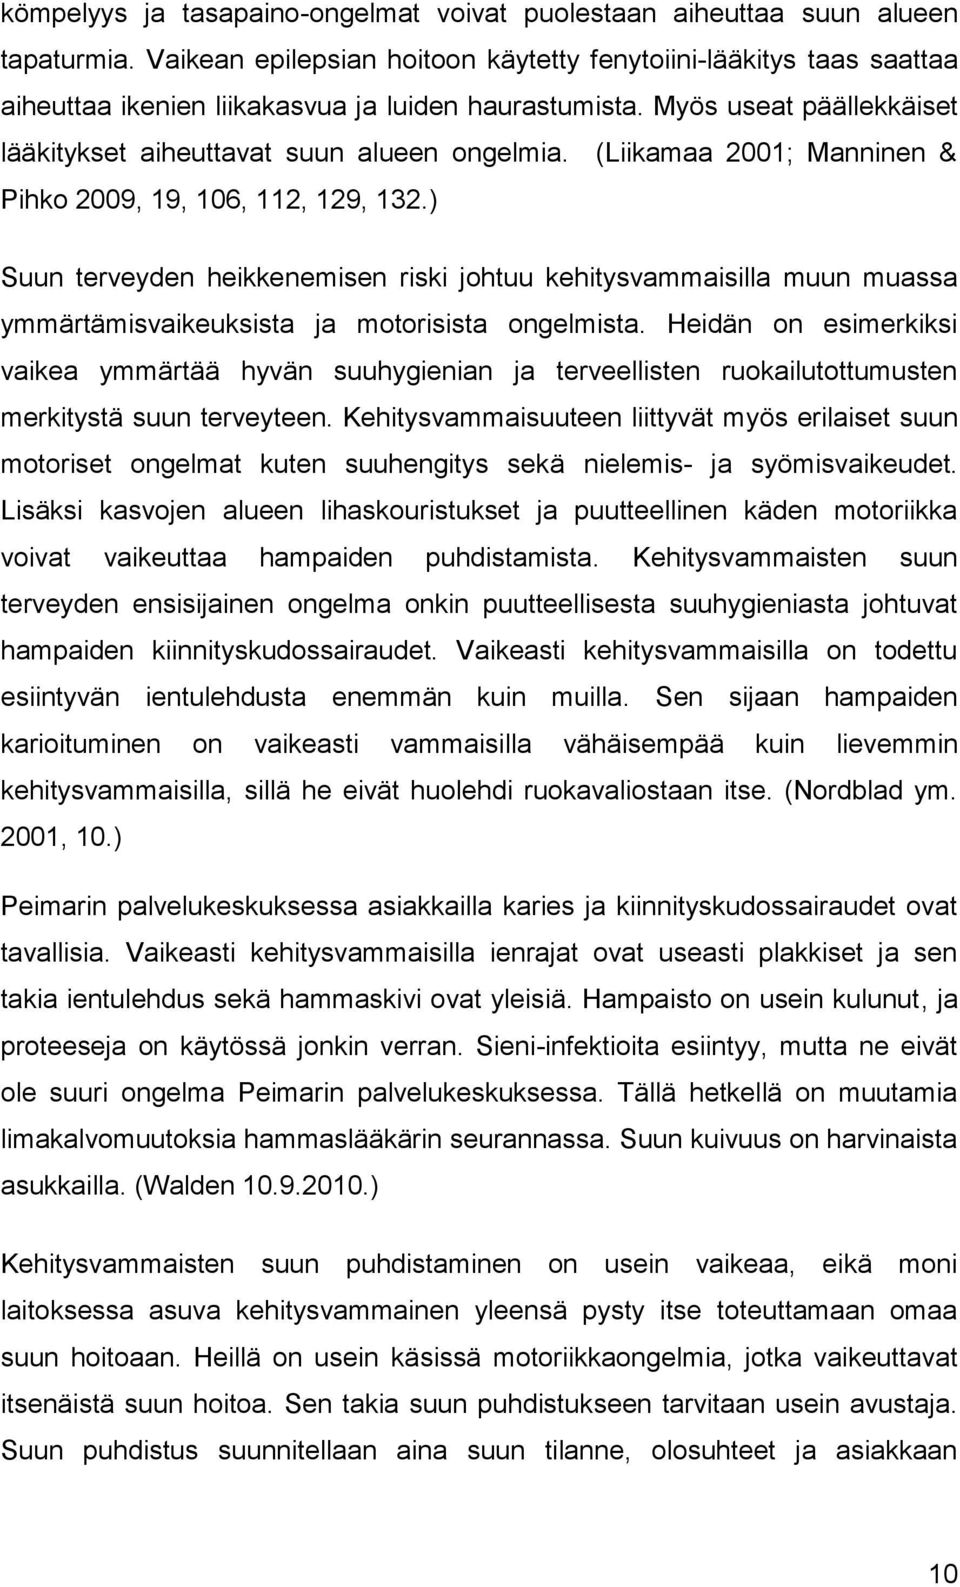 (Liikamaa 2001; Manninen & Pihko 2009, 19, 106, 112, 129, 132.) Suun terveyden heikkenemisen riski johtuu kehitysvammaisilla muun muassa ymmärtämisvaikeuksista ja motorisista ongelmista.